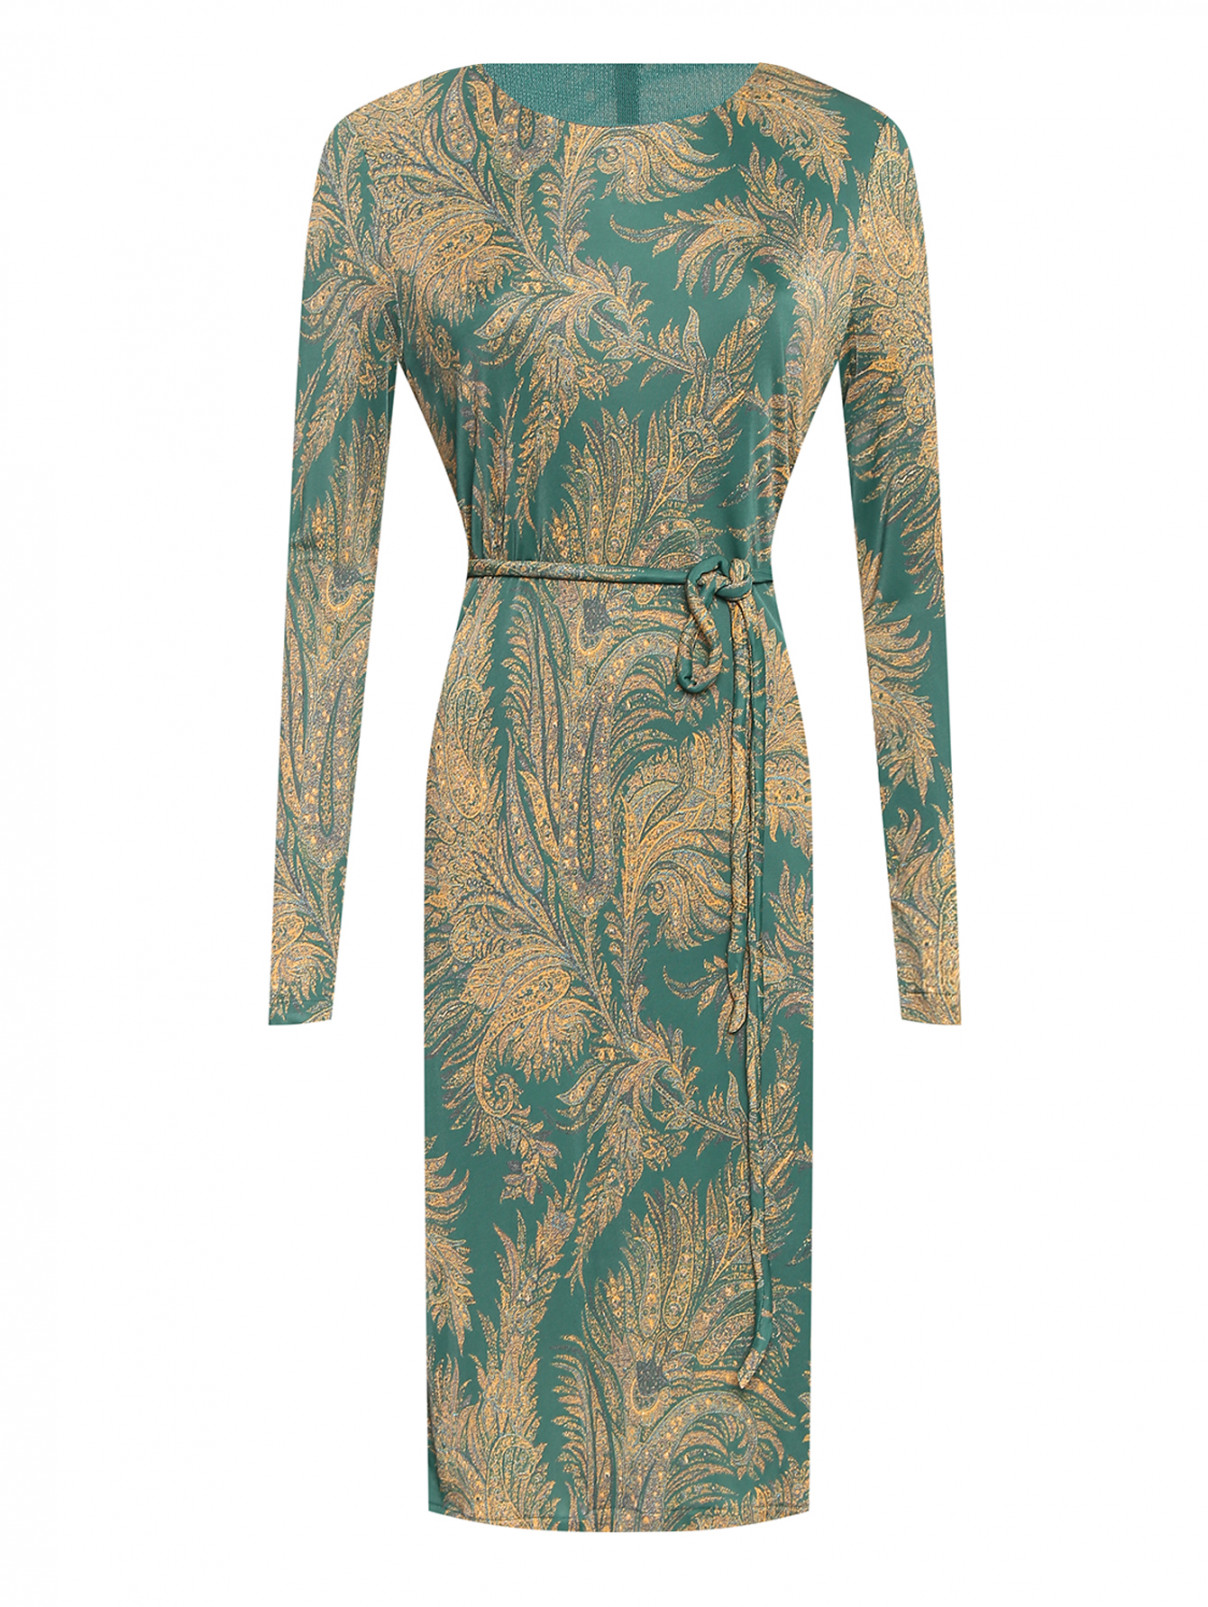 Платье из вискозы с поясом и узорм Etro  –  Общий вид  – Цвет:  Зеленый